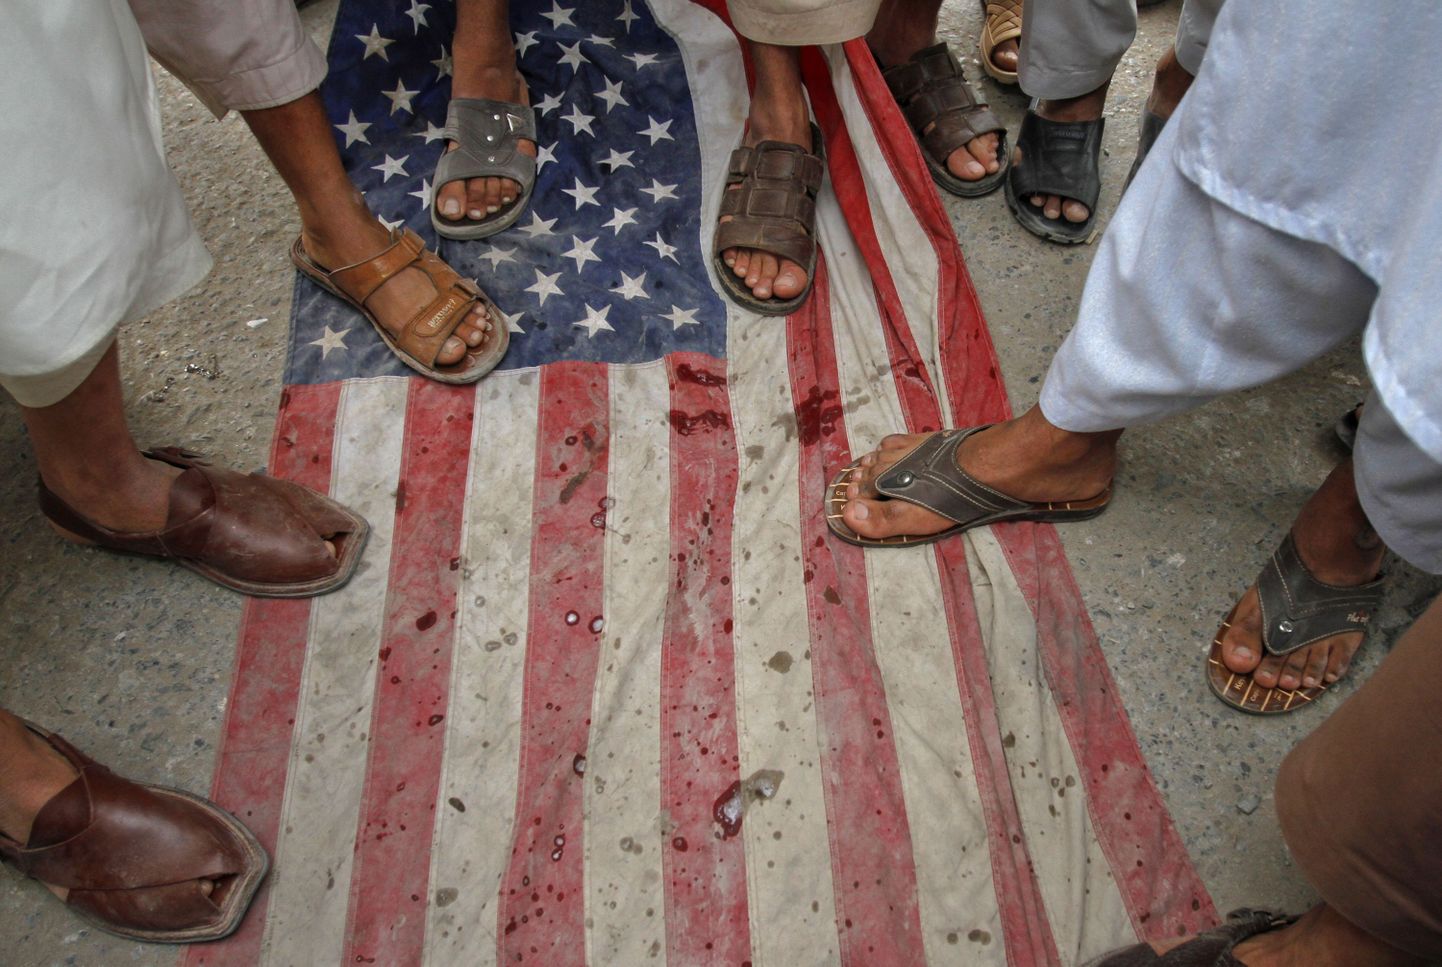 Pakistanlased USA lipul, väljendades nii vastuseis droonirünnakutele.